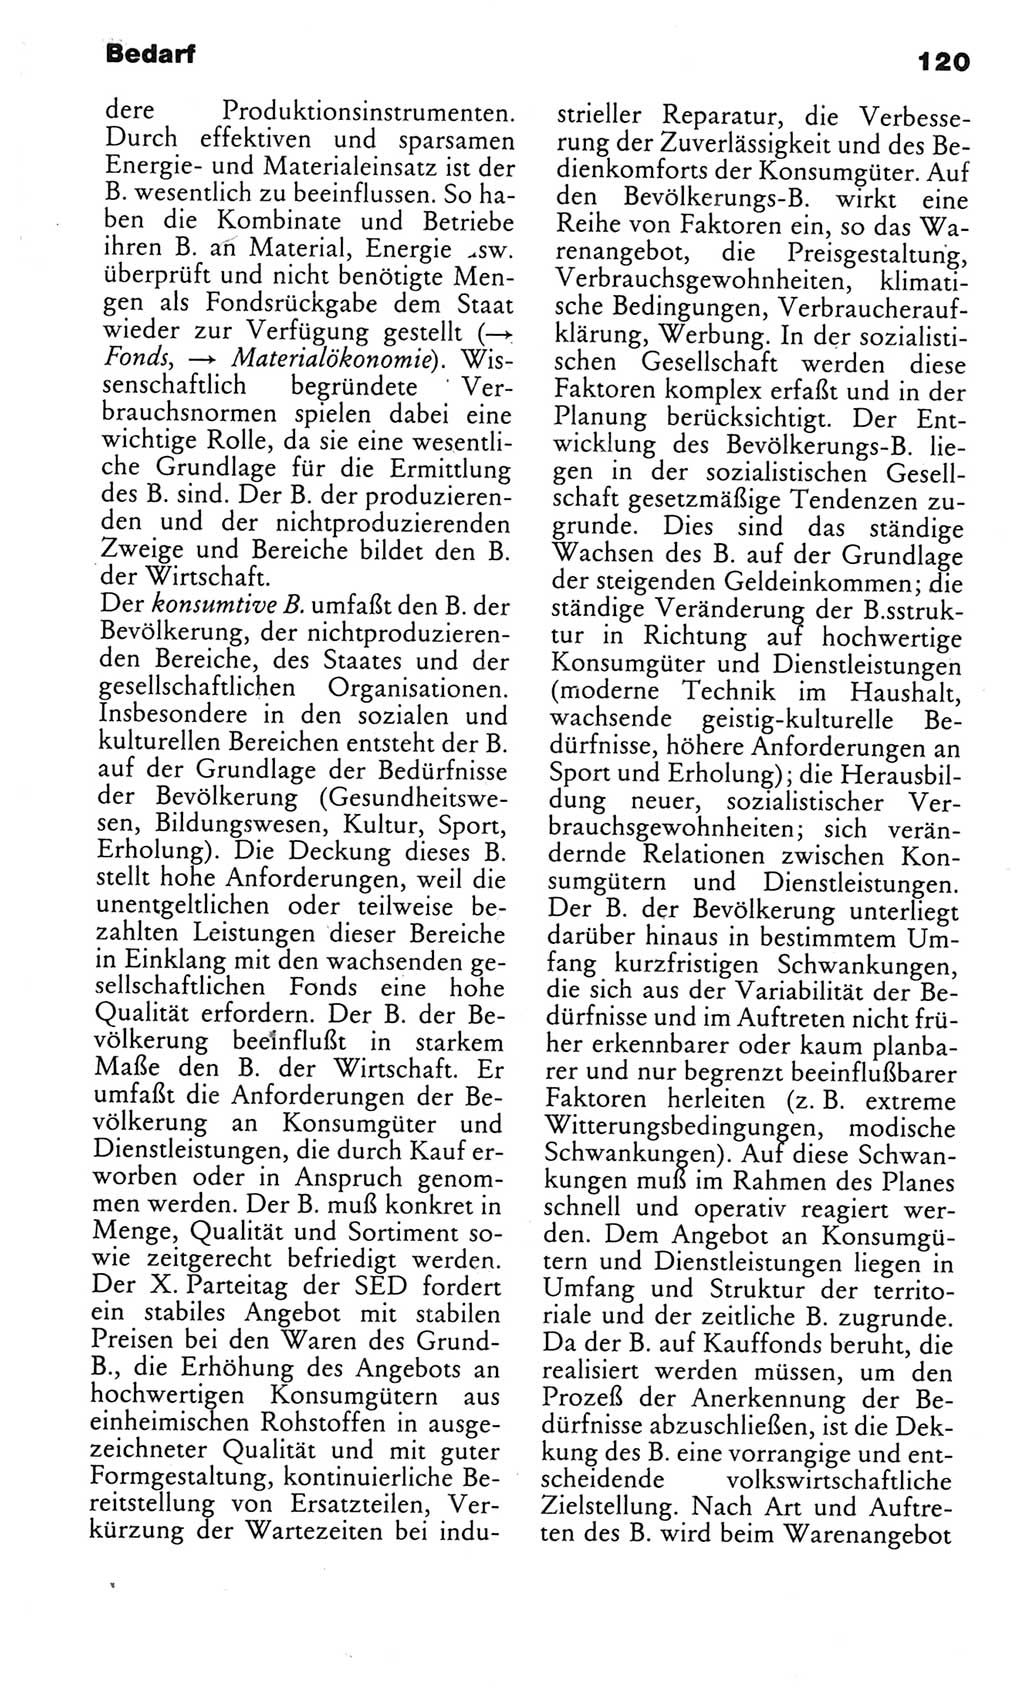 Kleines politisches Wörterbuch [Deutsche Demokratische Republik (DDR)] 1985, Seite 120 (Kl. pol. Wb. DDR 1985, S. 120)